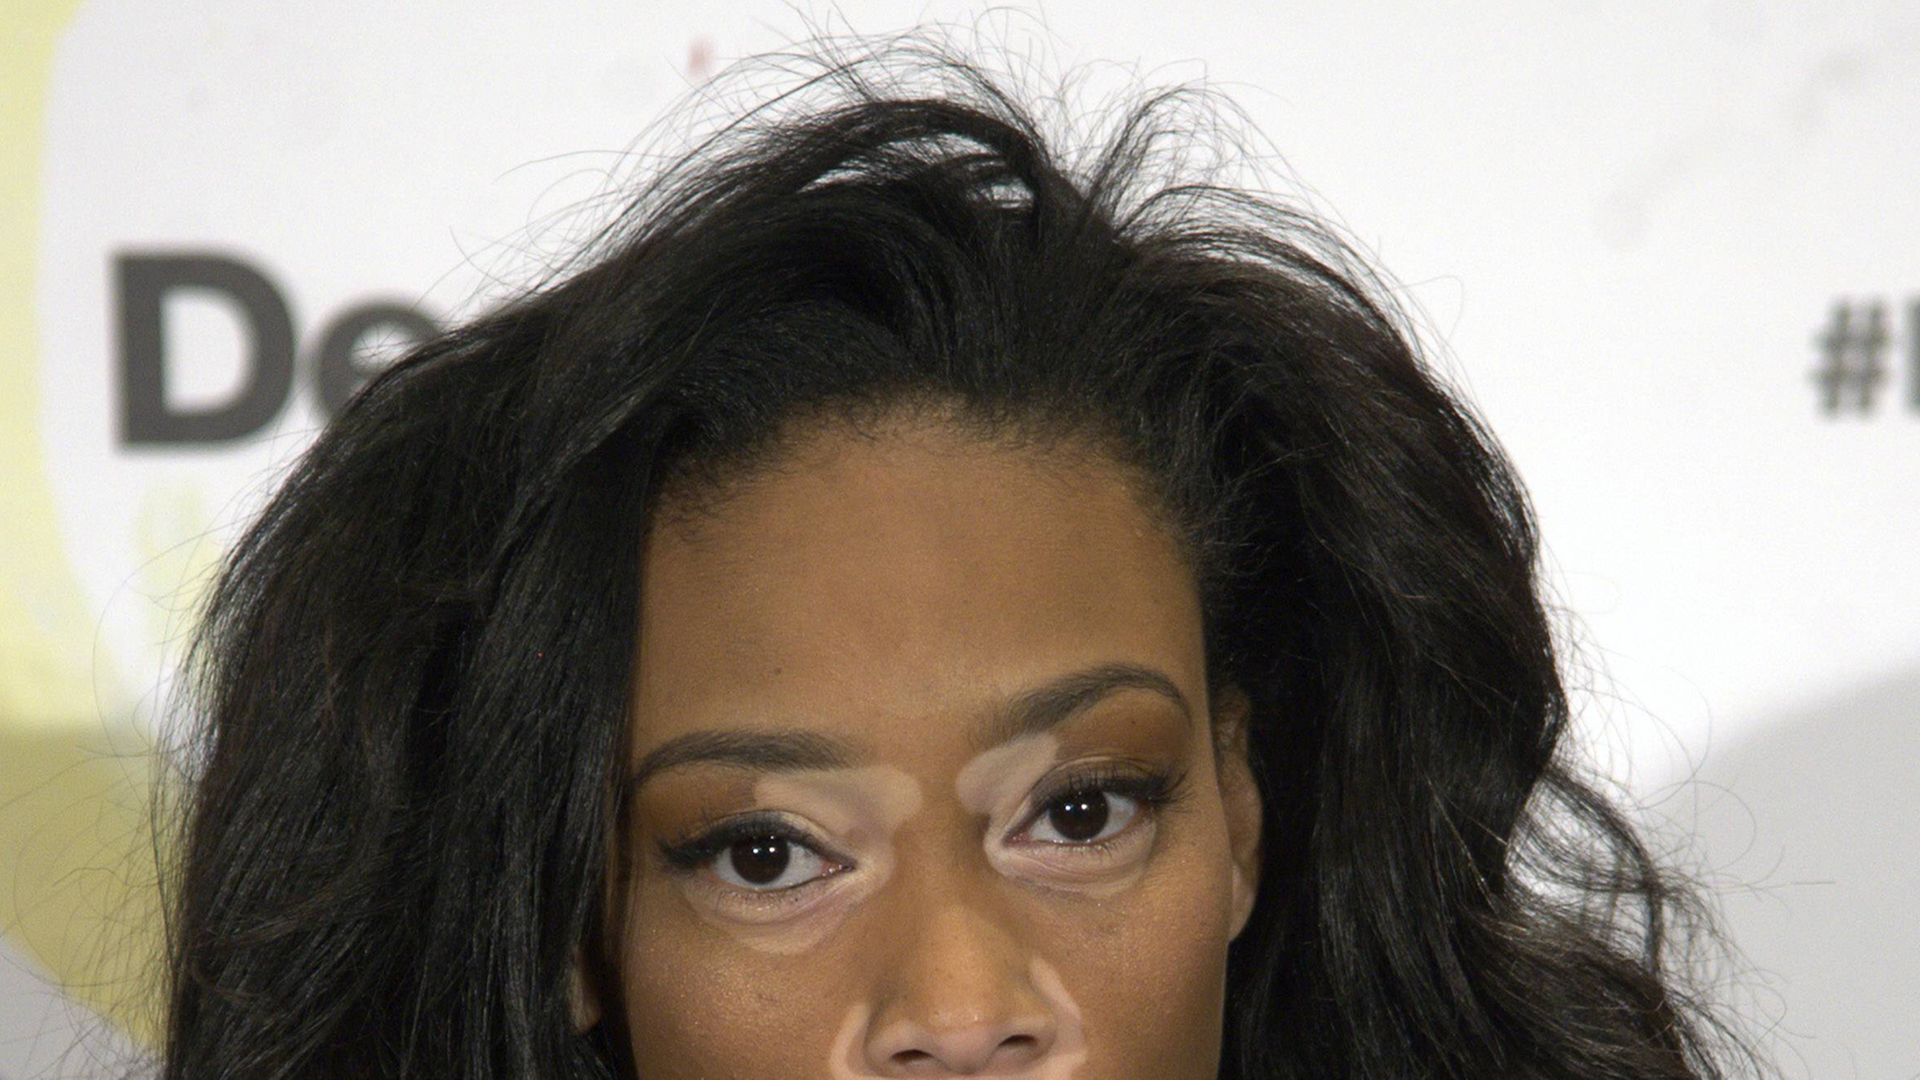 Modell Chantelle Brown-Young hat die Hautkrankheit Vitiligo